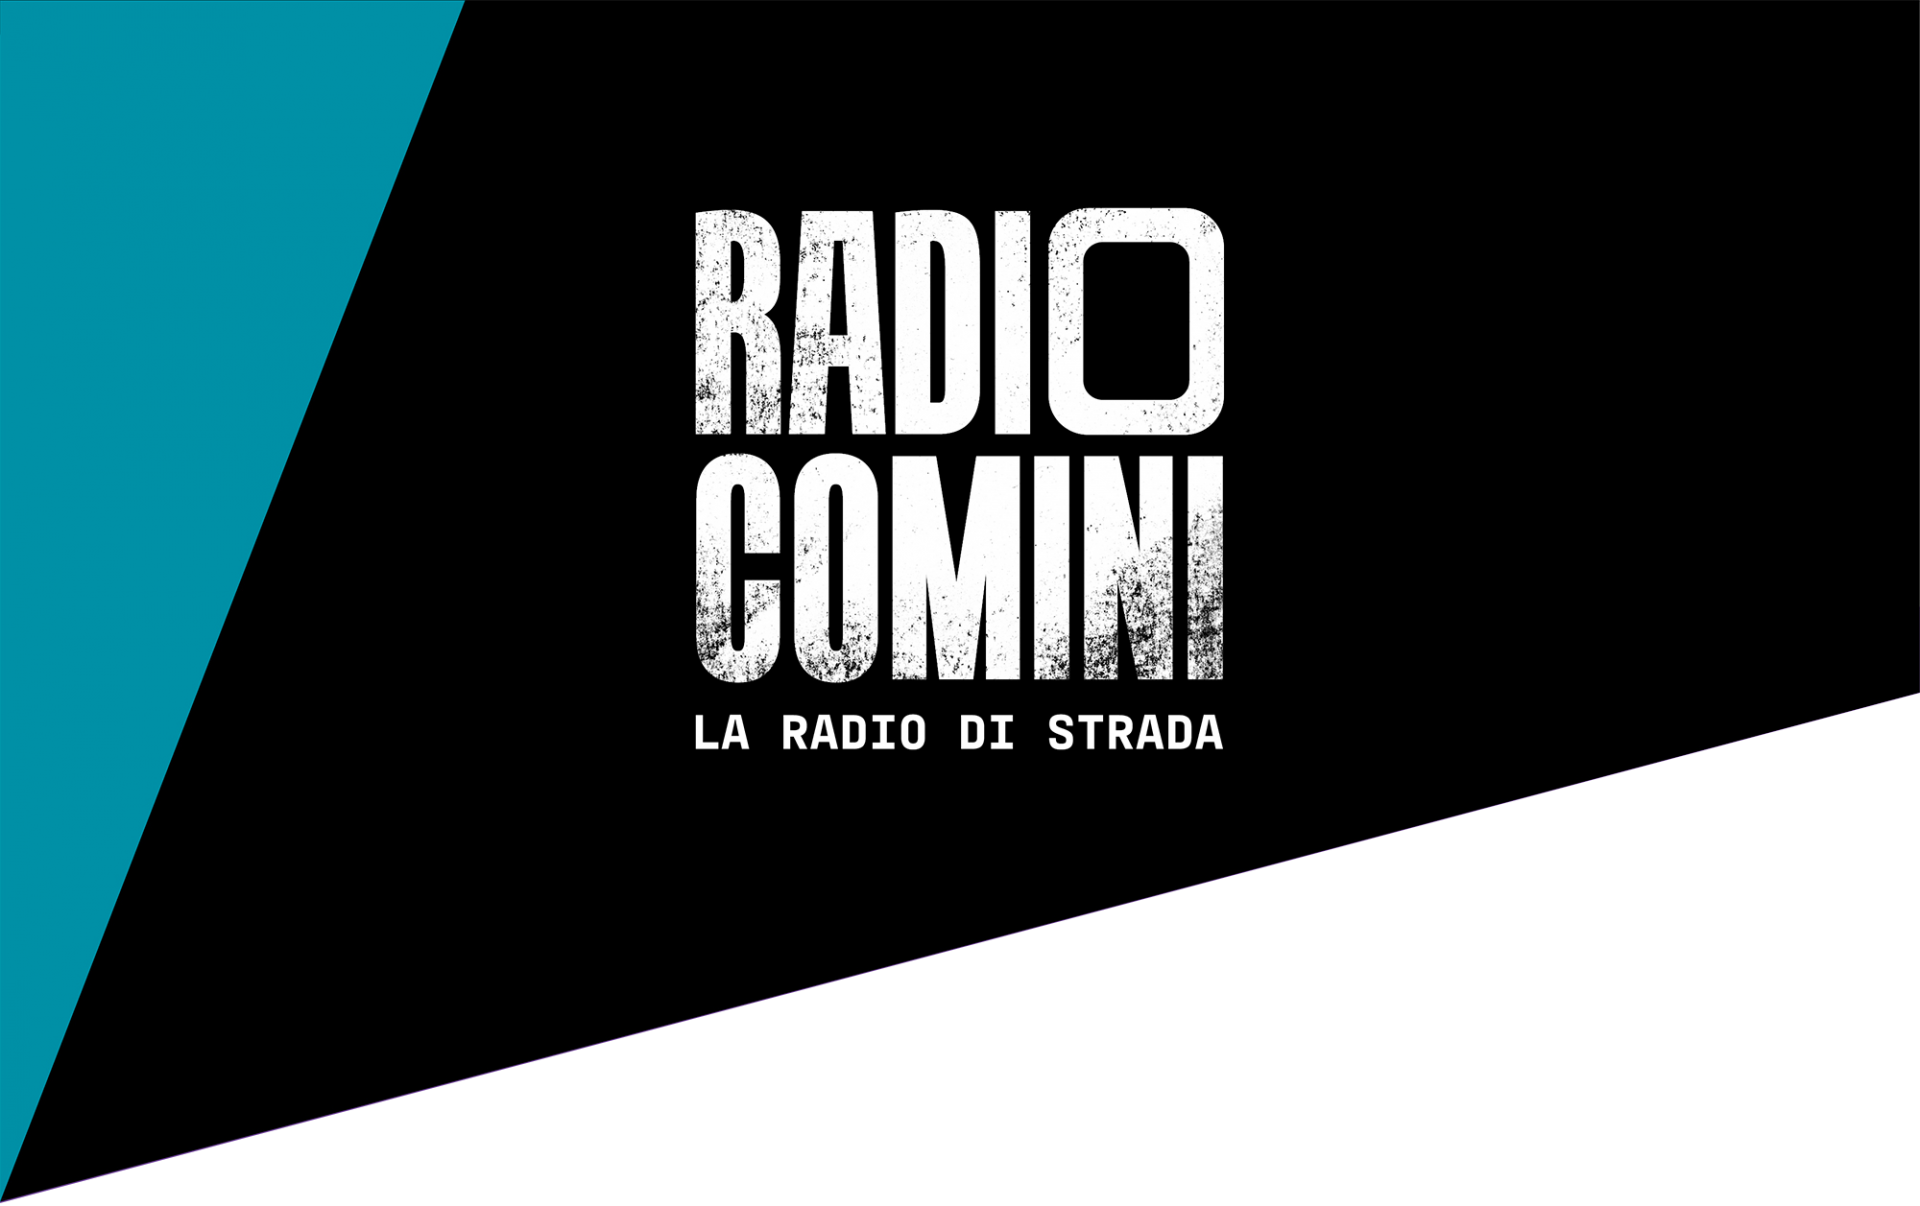 Radio Comini - La radio di strada